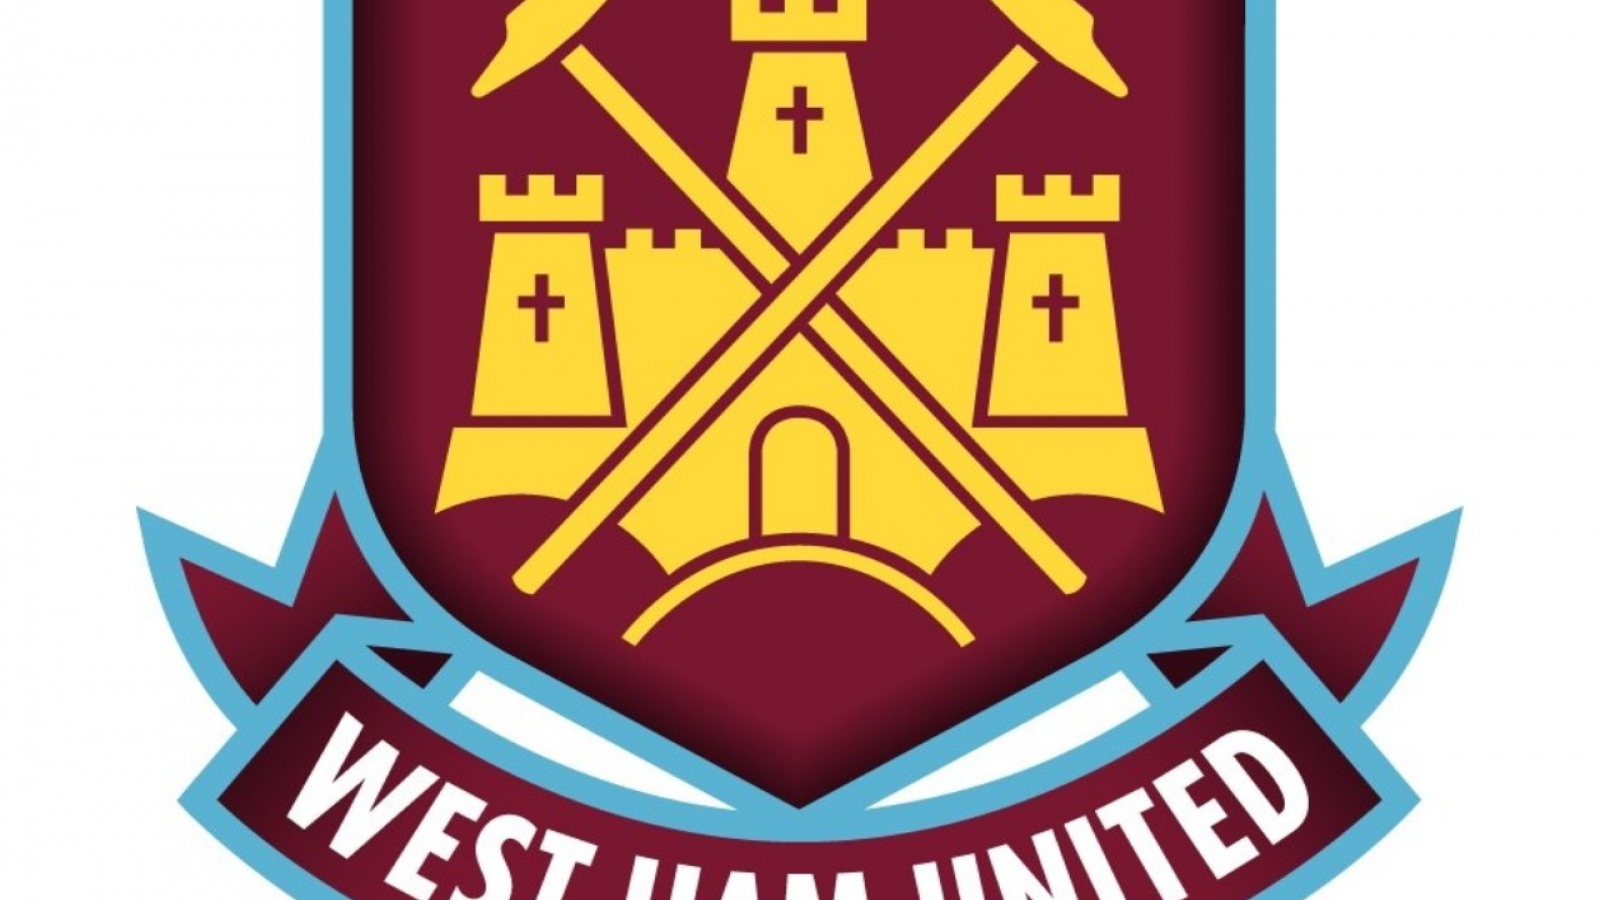 The popular football club england West Ham united